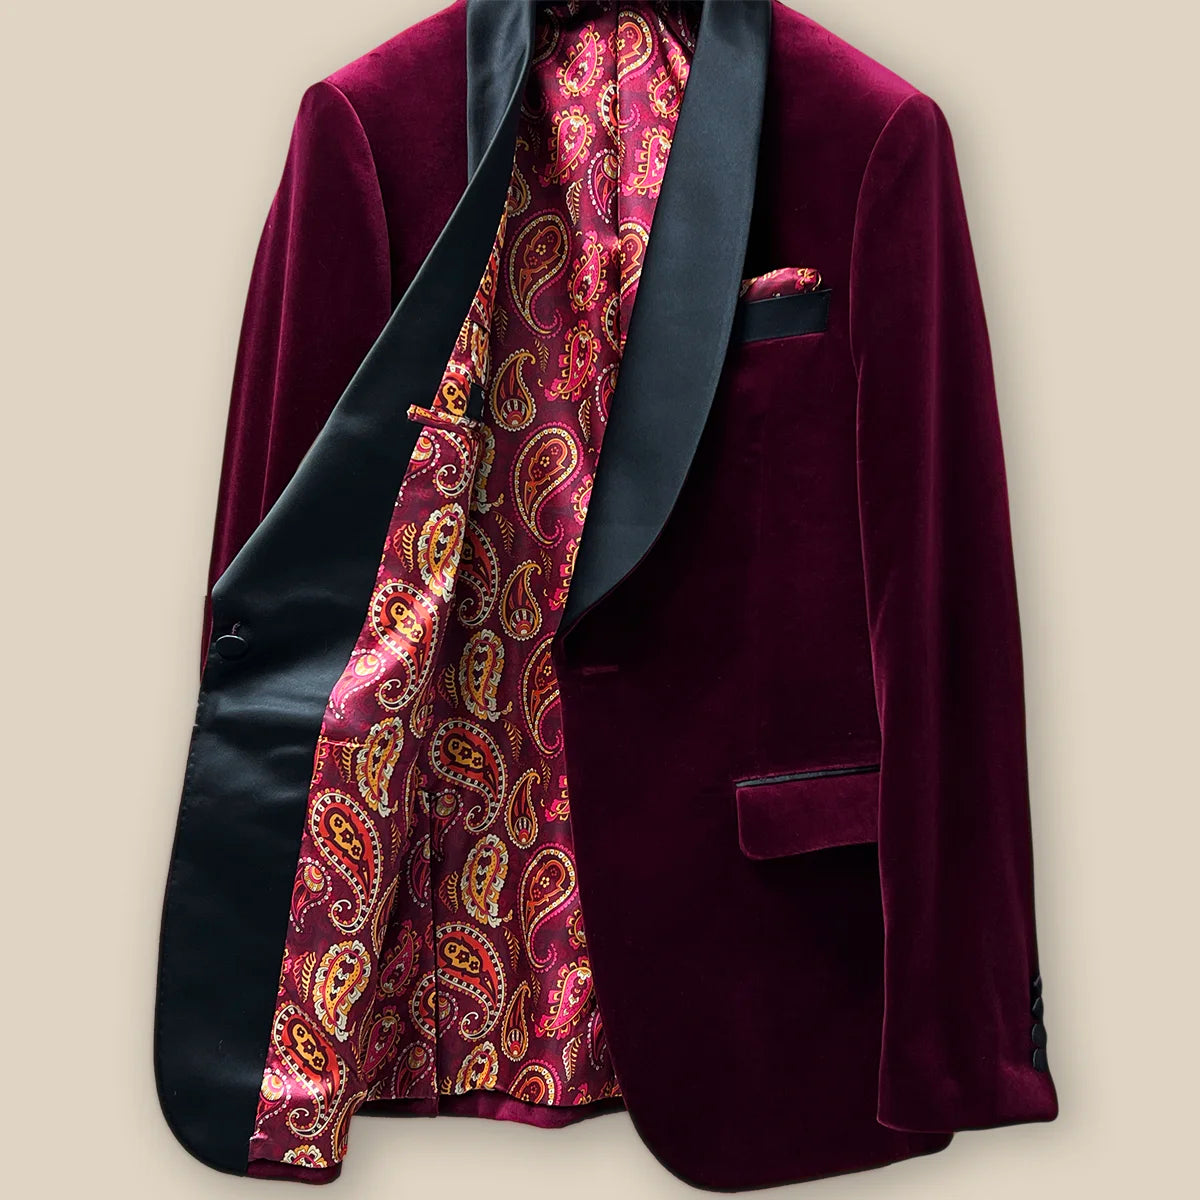 Right interior view of a burgundy velvet formal dinner jacket.